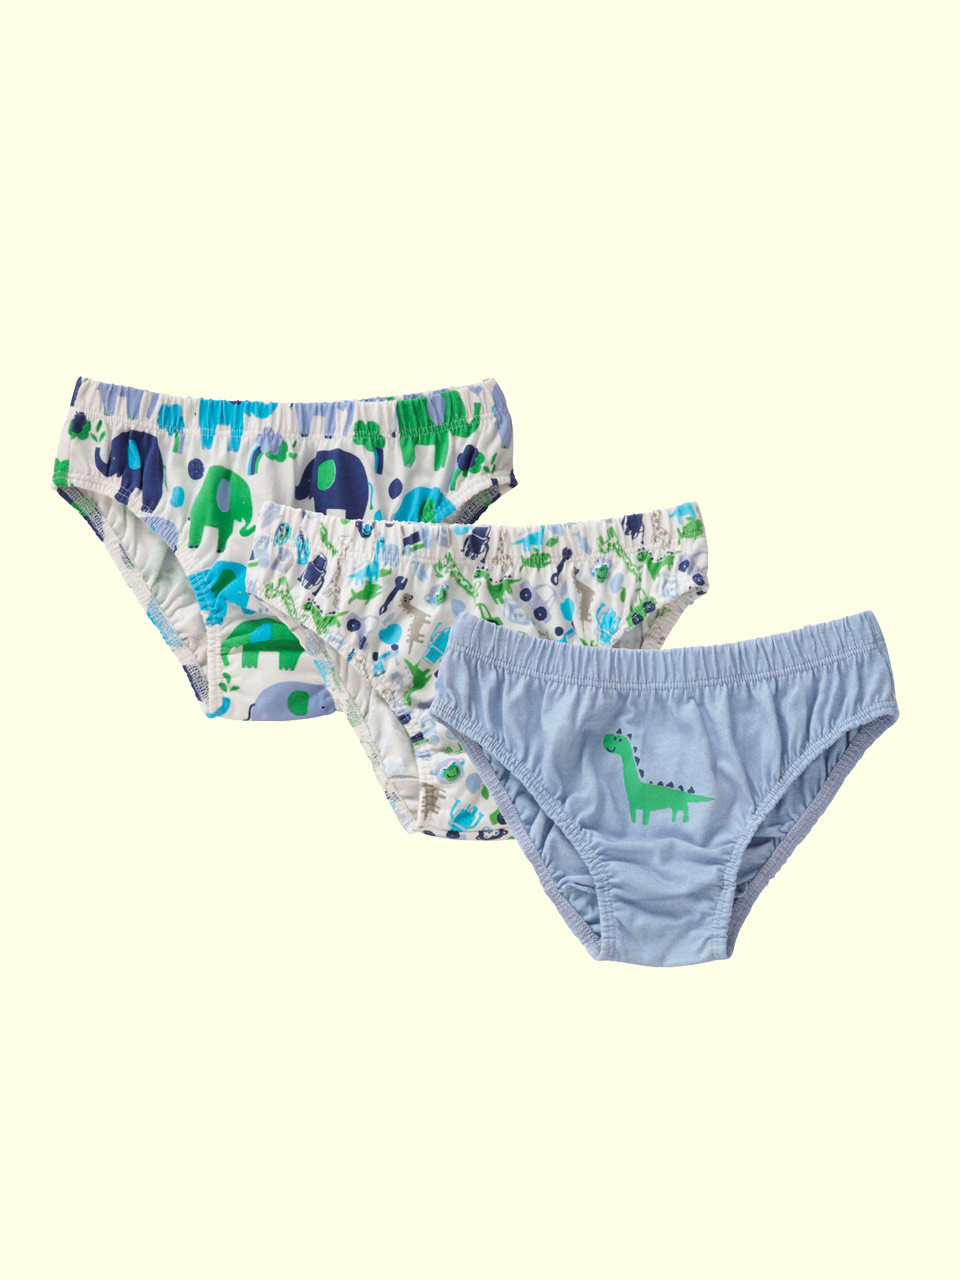 Kids Organic Cotton Underwear, Dinosaur, Girls Underwear, Boys